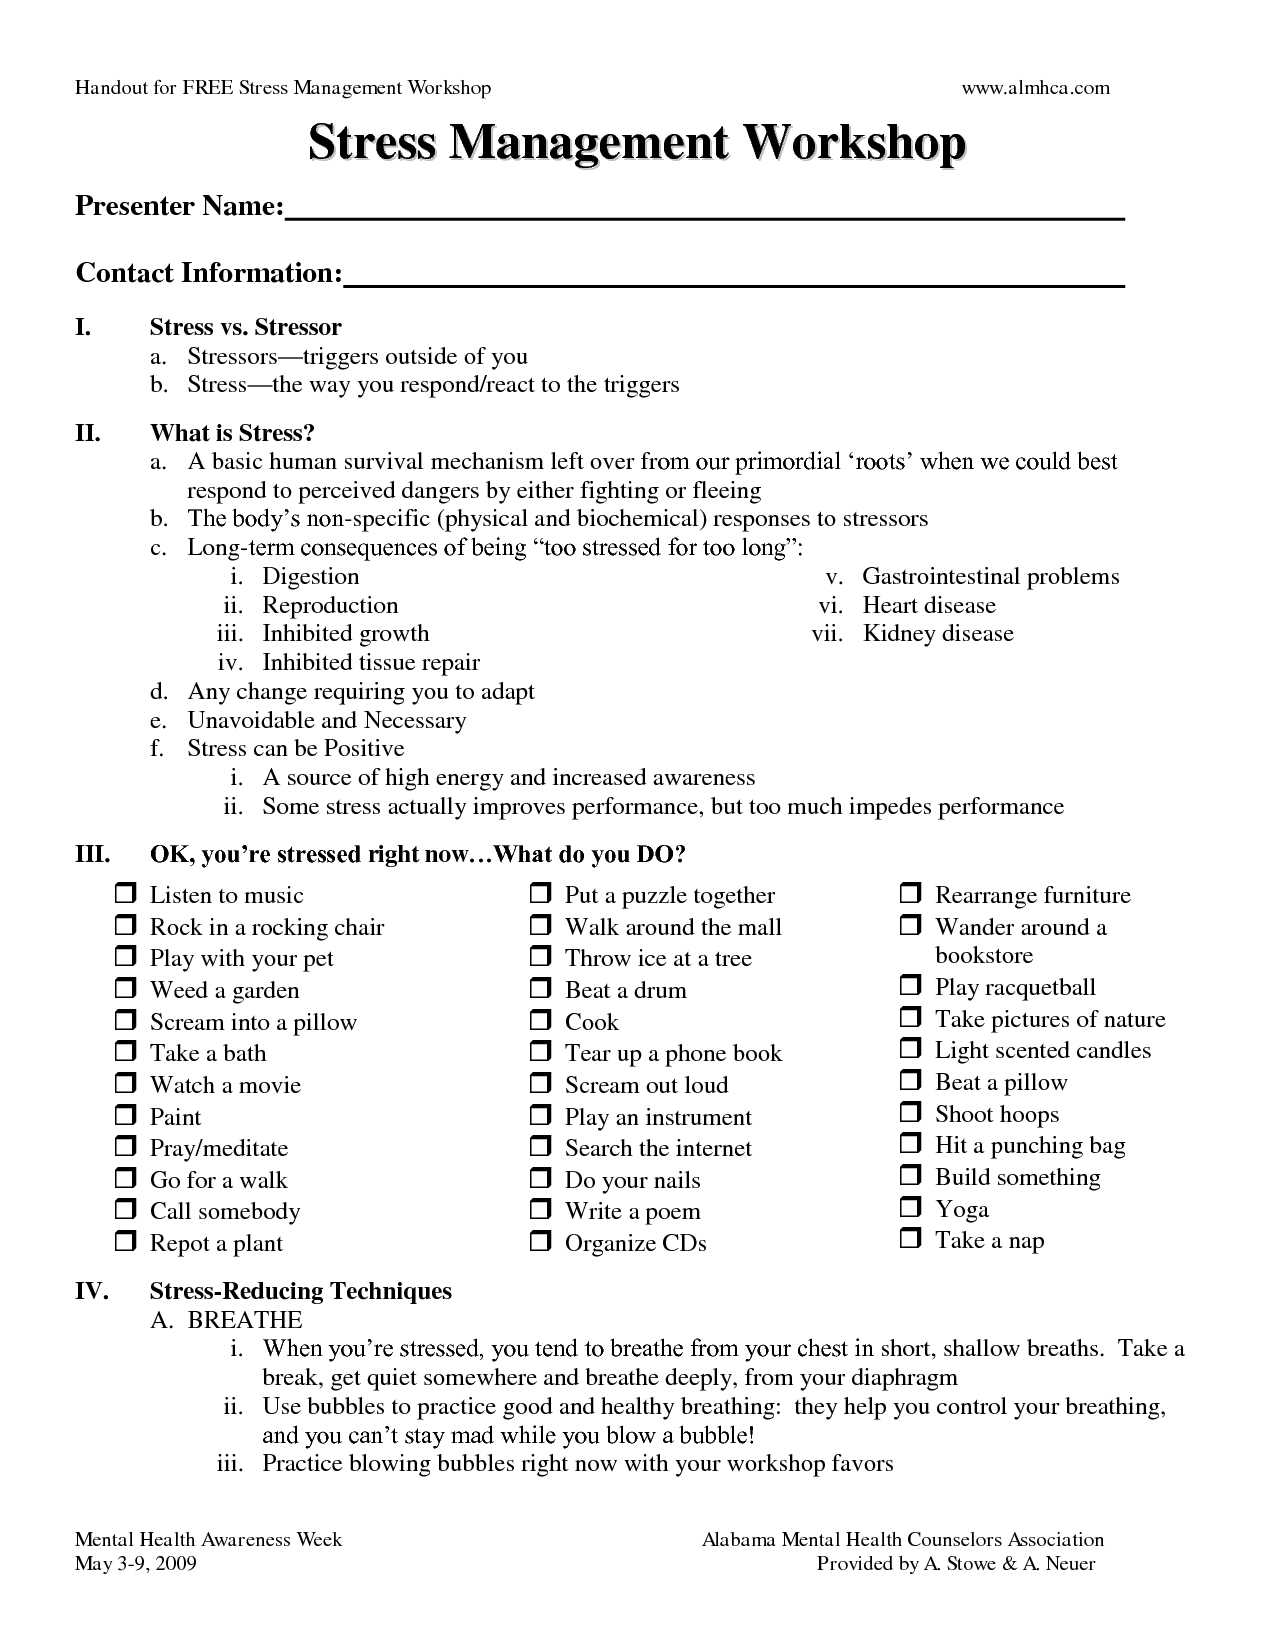 Anger Worksheets for Kids together with Stress Management Worksheets